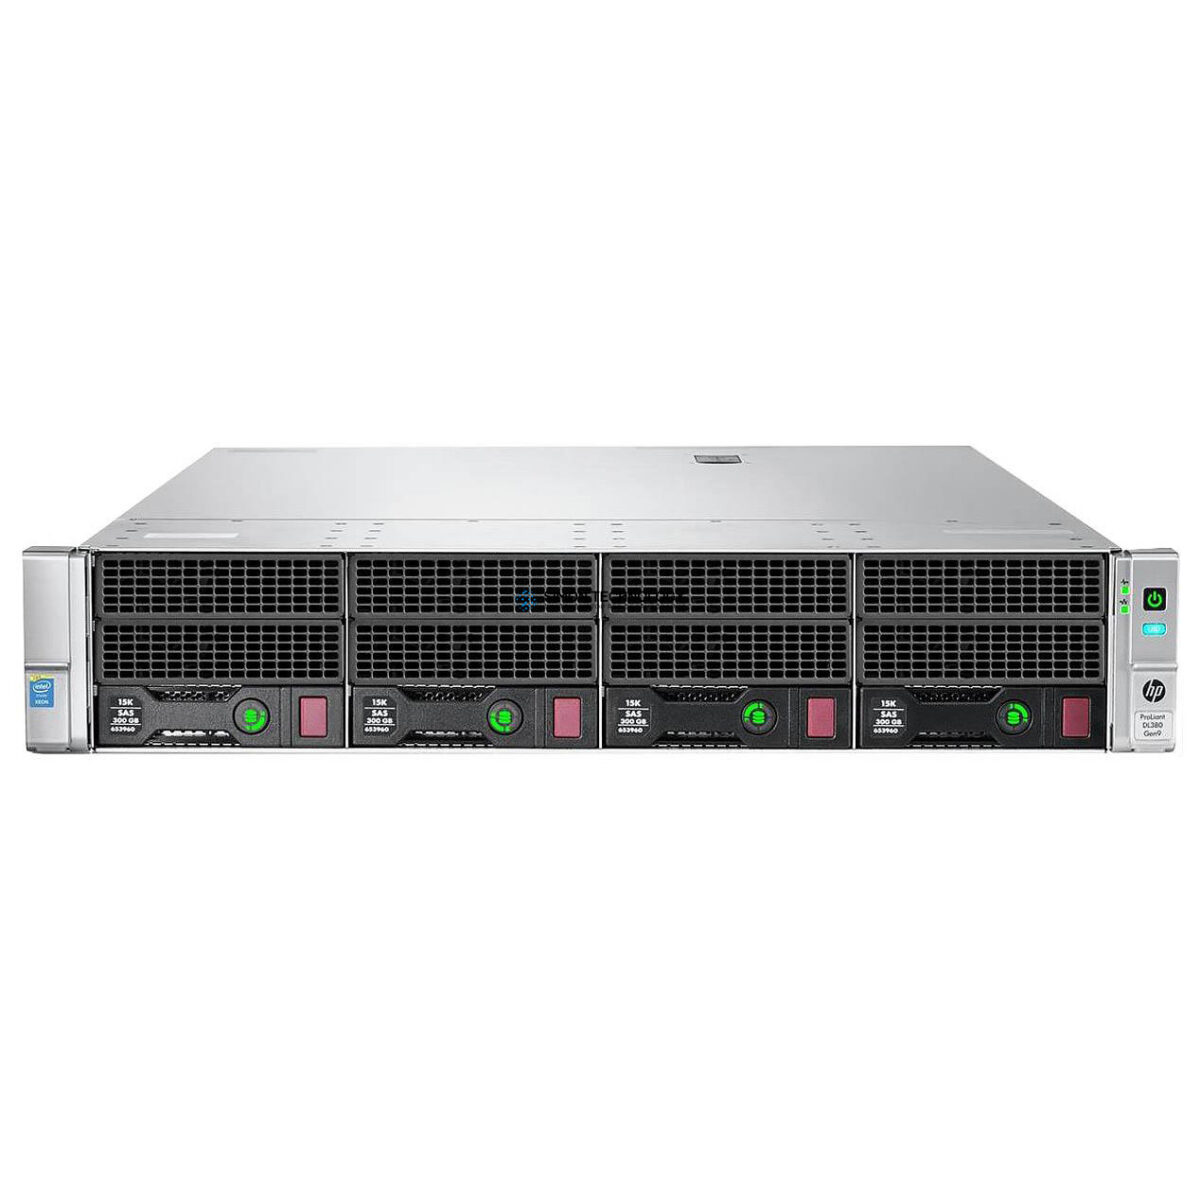 Сервер HP DL380 G9 4LFF CTO UPGRADED TO V4 (DL380 G9 4LFF V4)